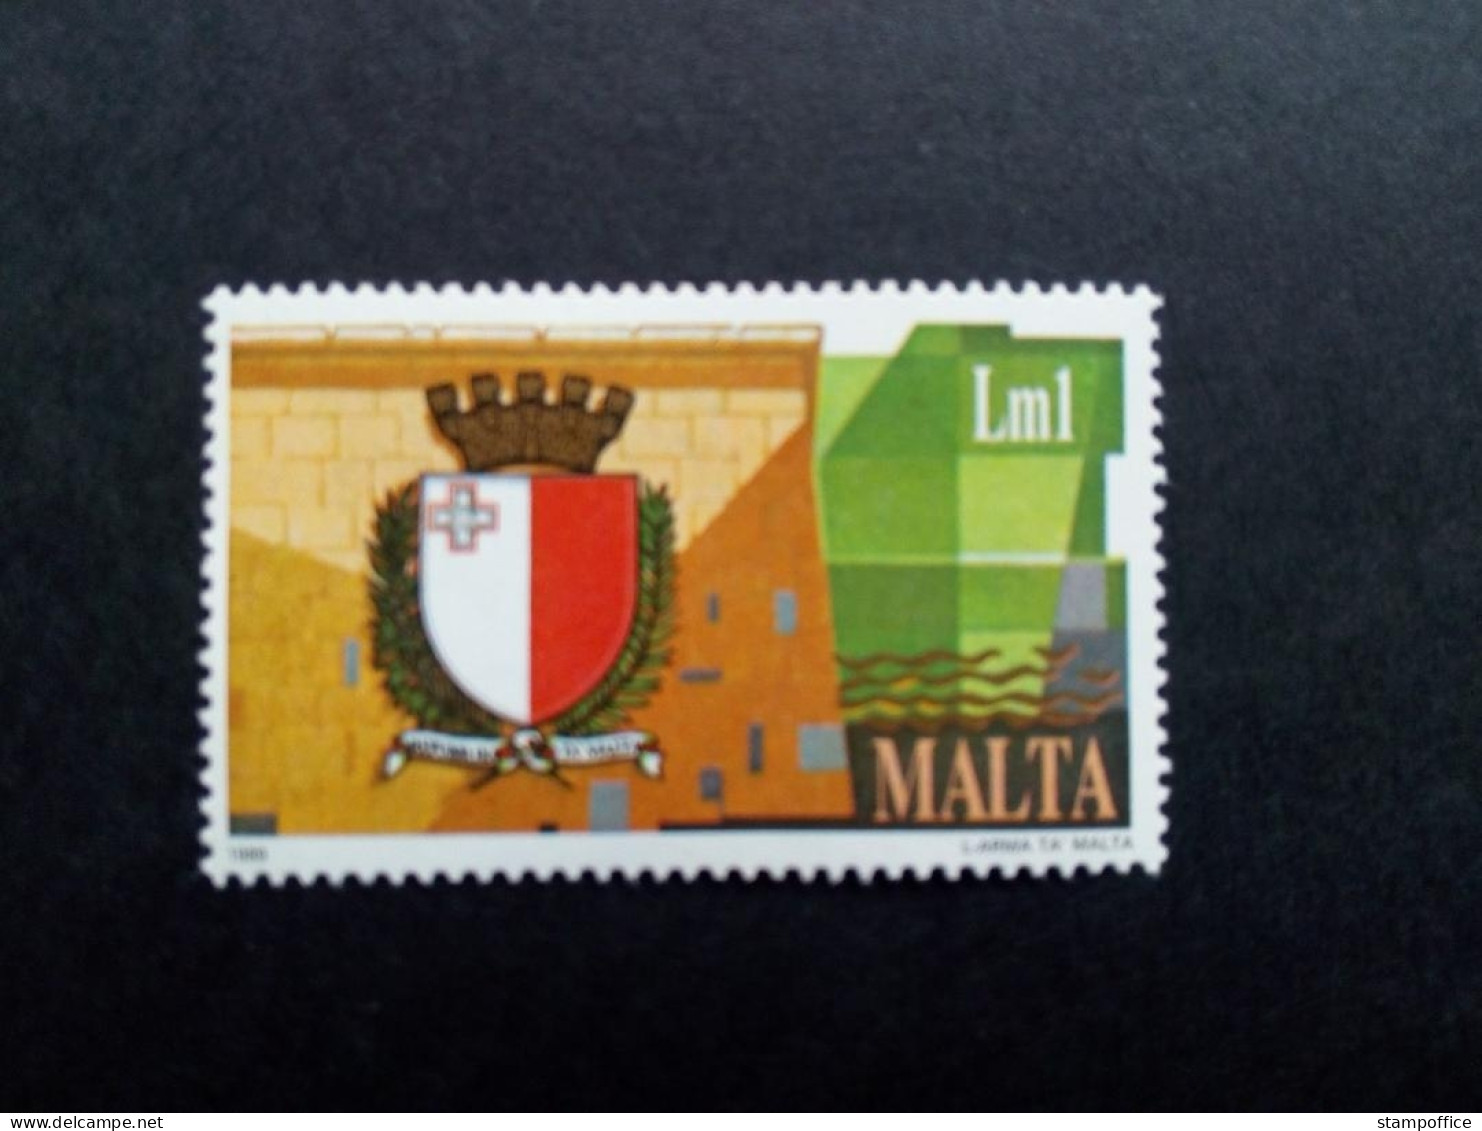 MALTA MI-NR. 815 POSTFRISCH(MINT) STAATSWAPPEN 1989 - Malta